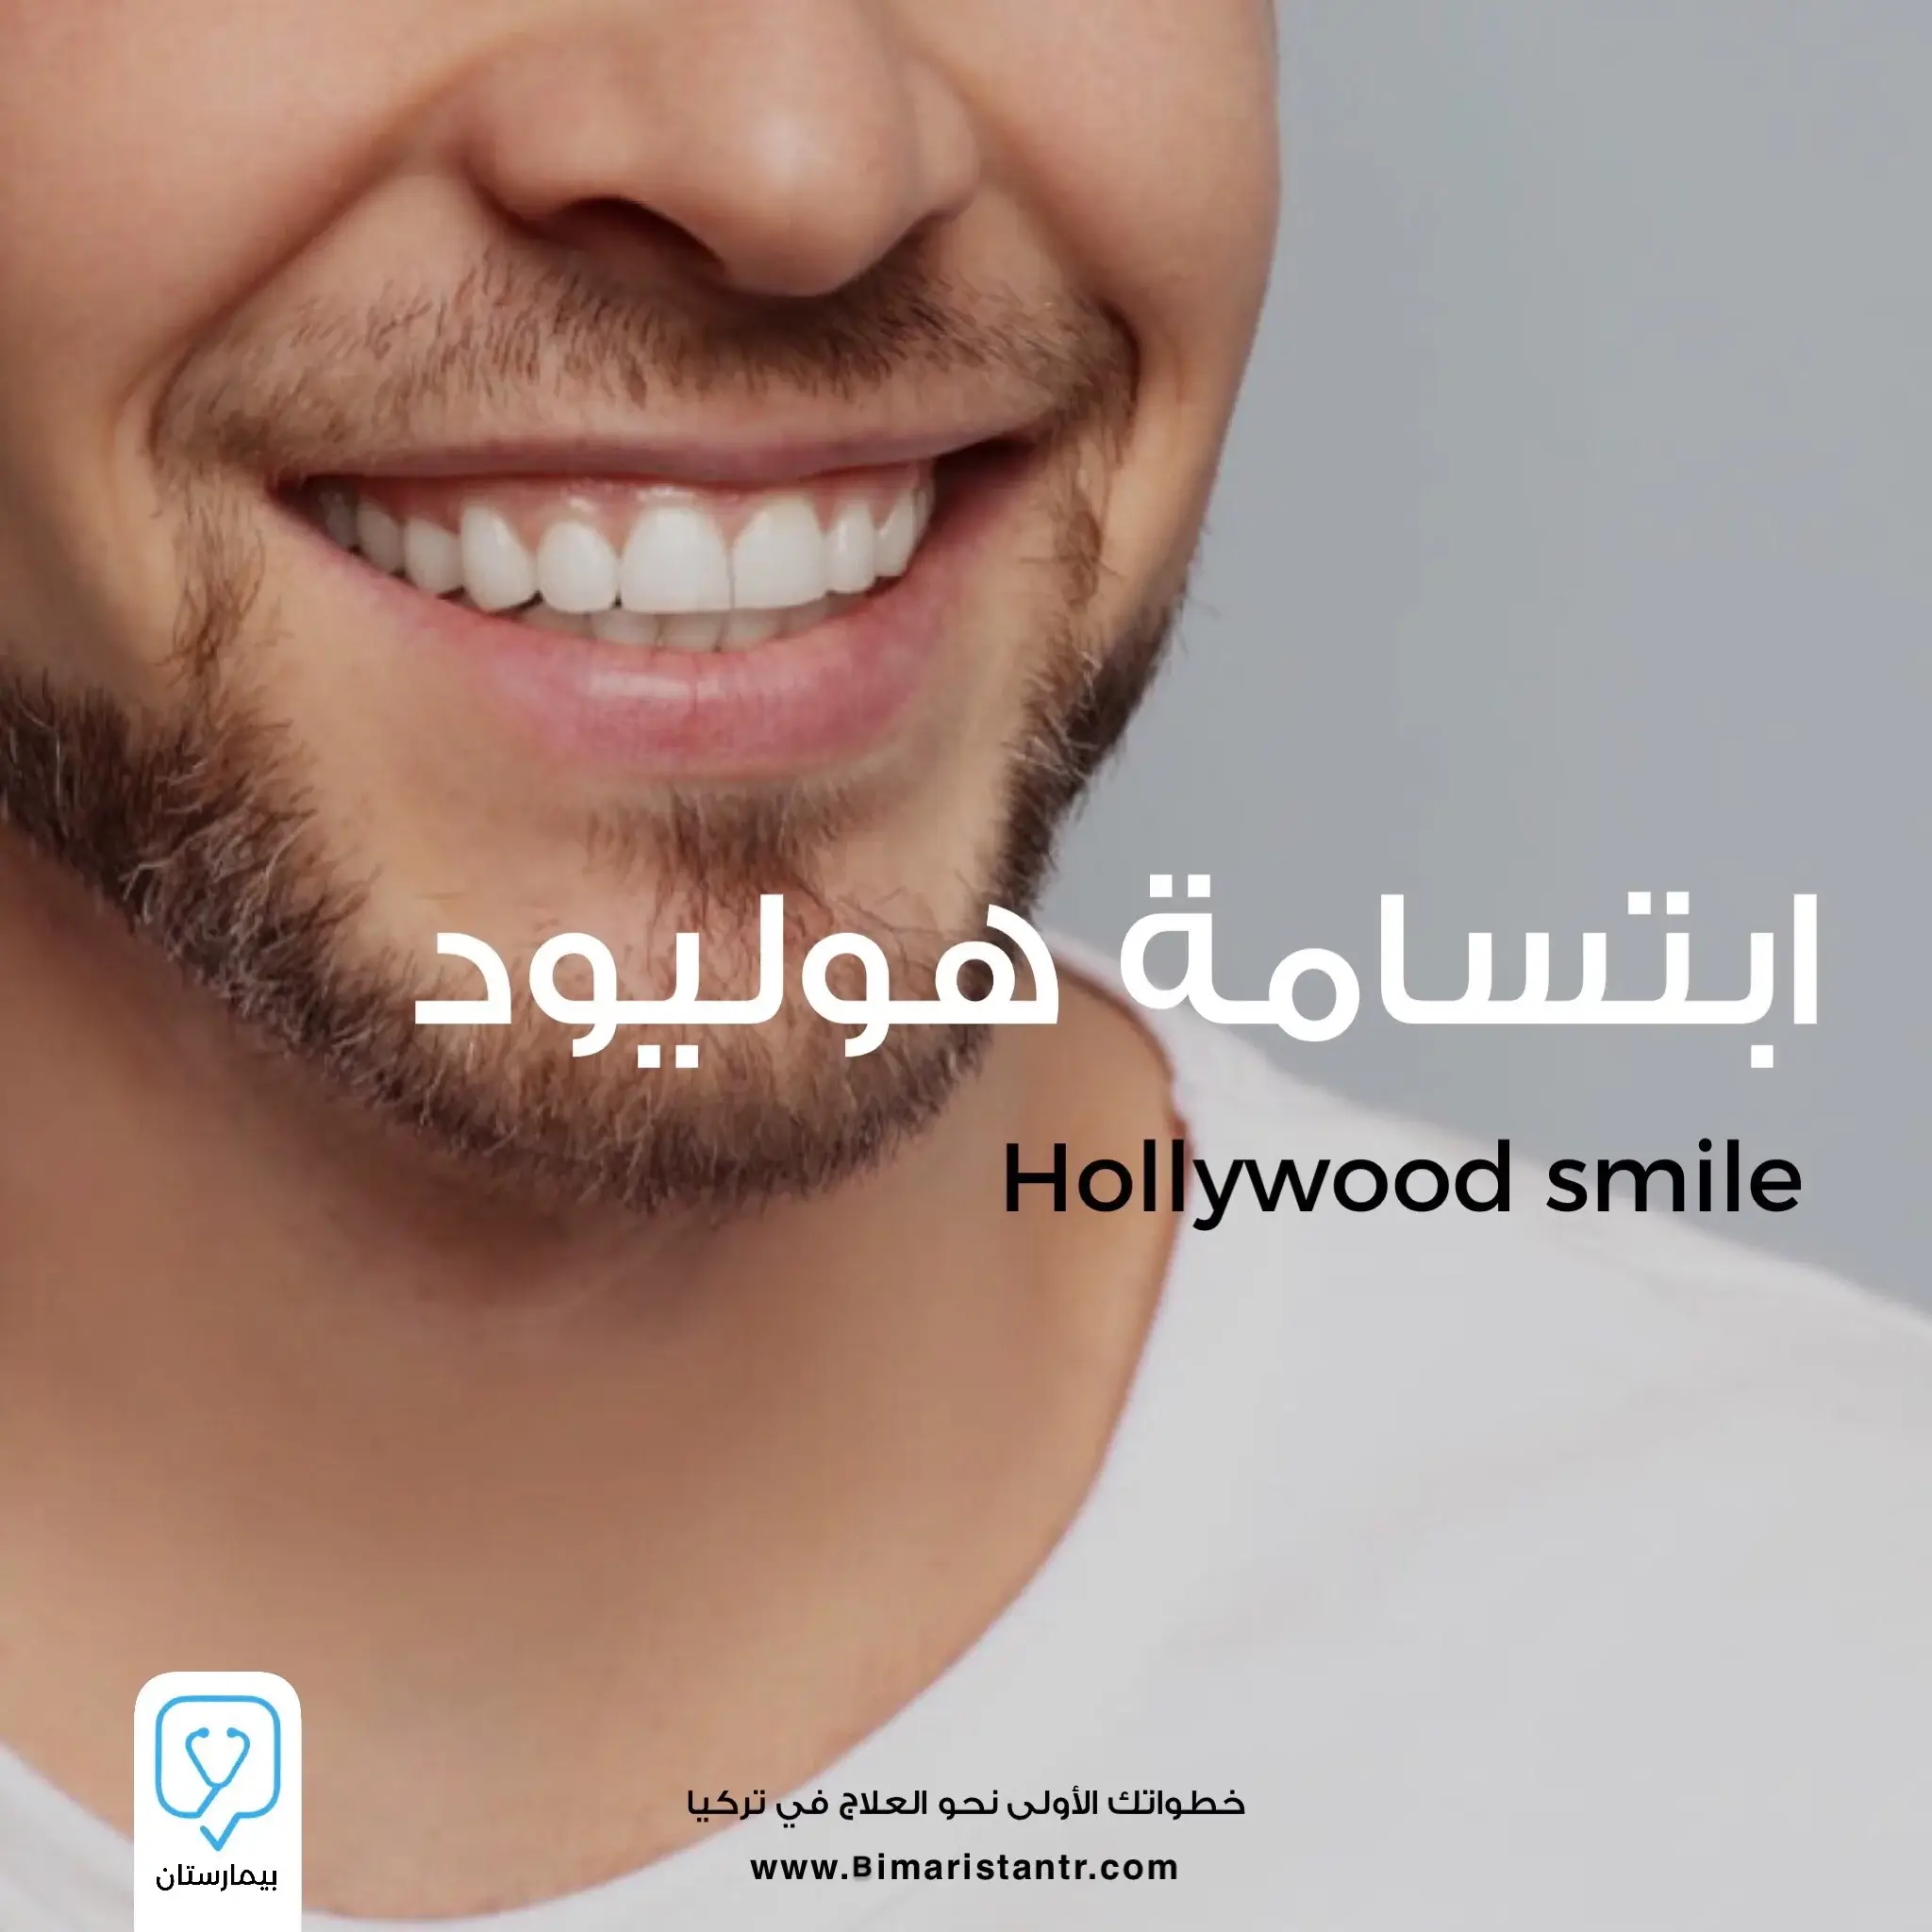 ابتسامة-هوليوود-Hollywood-smile